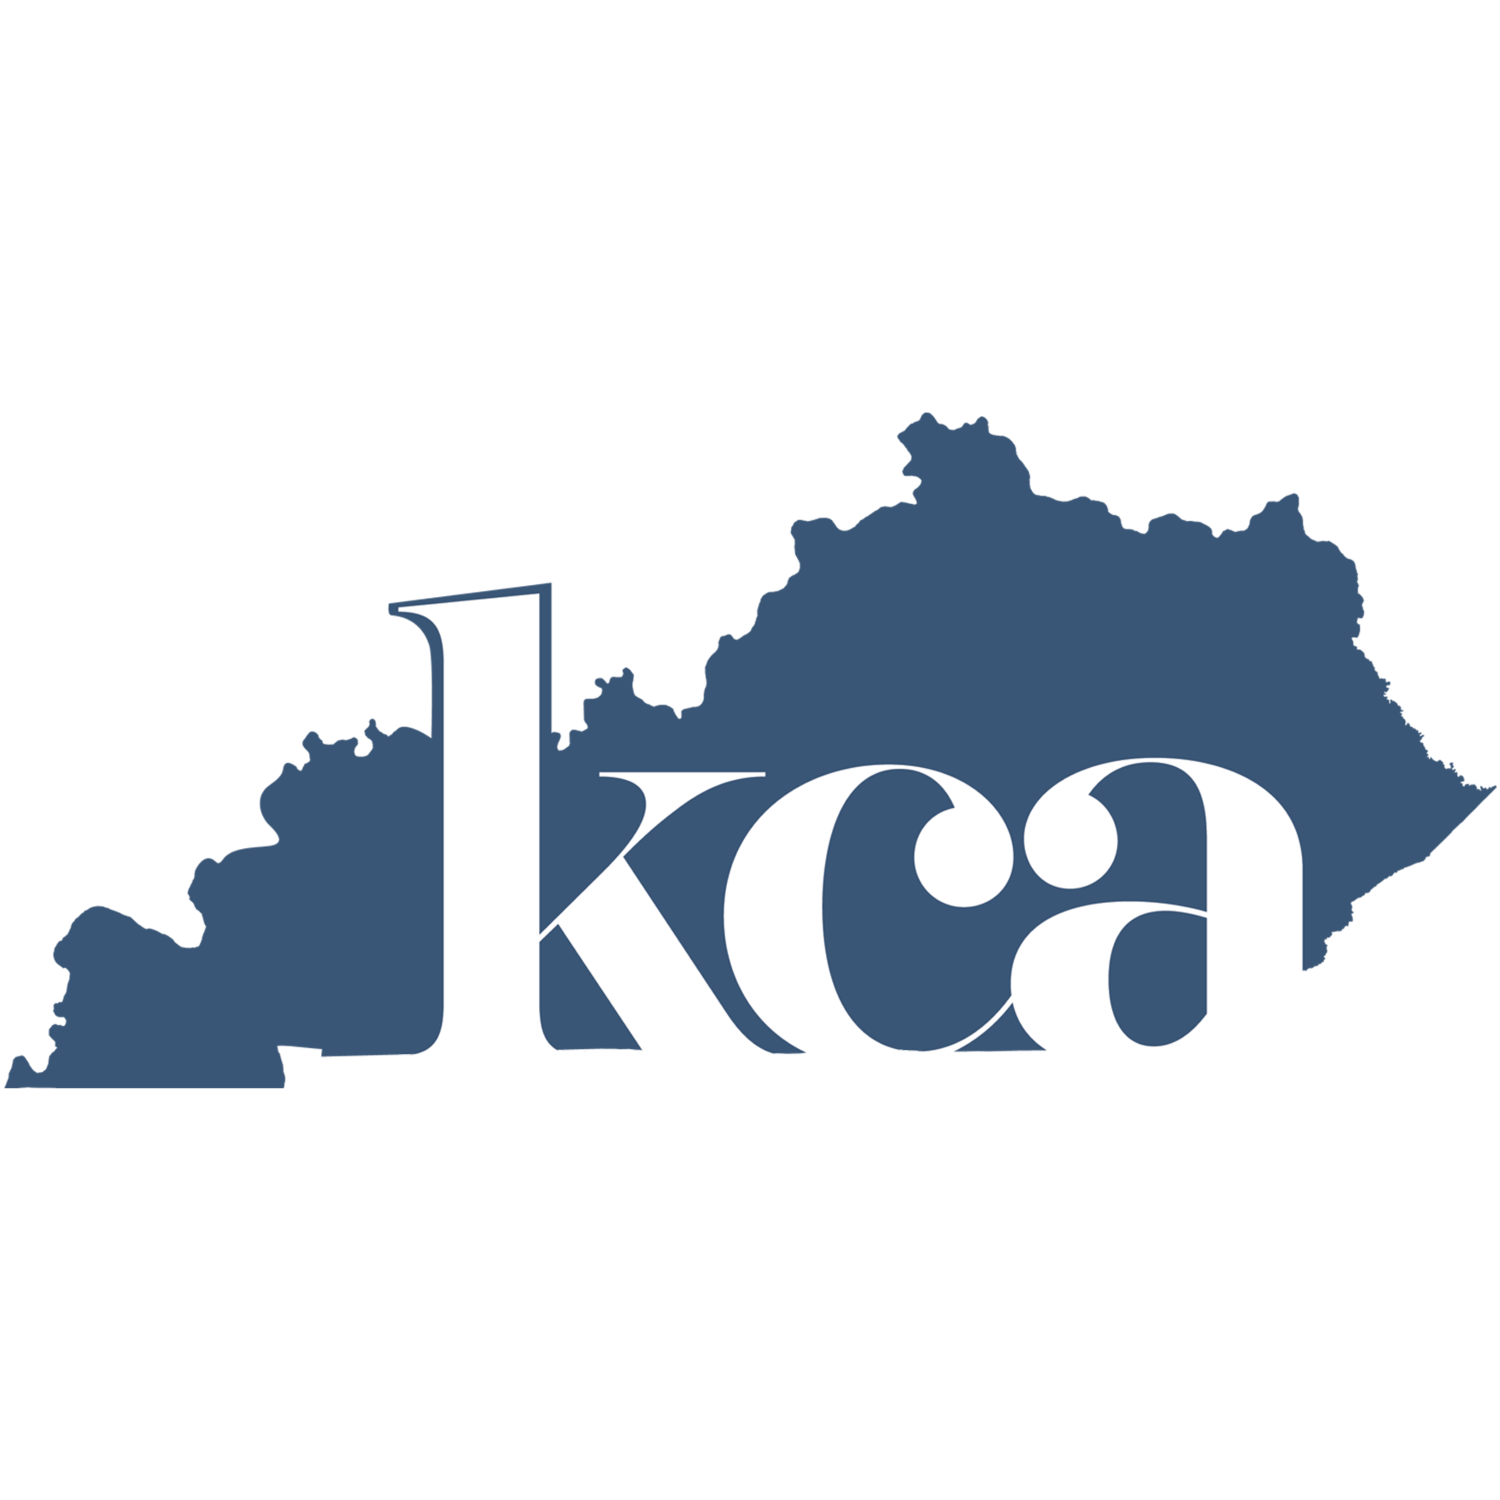 Kentucky Communication Association